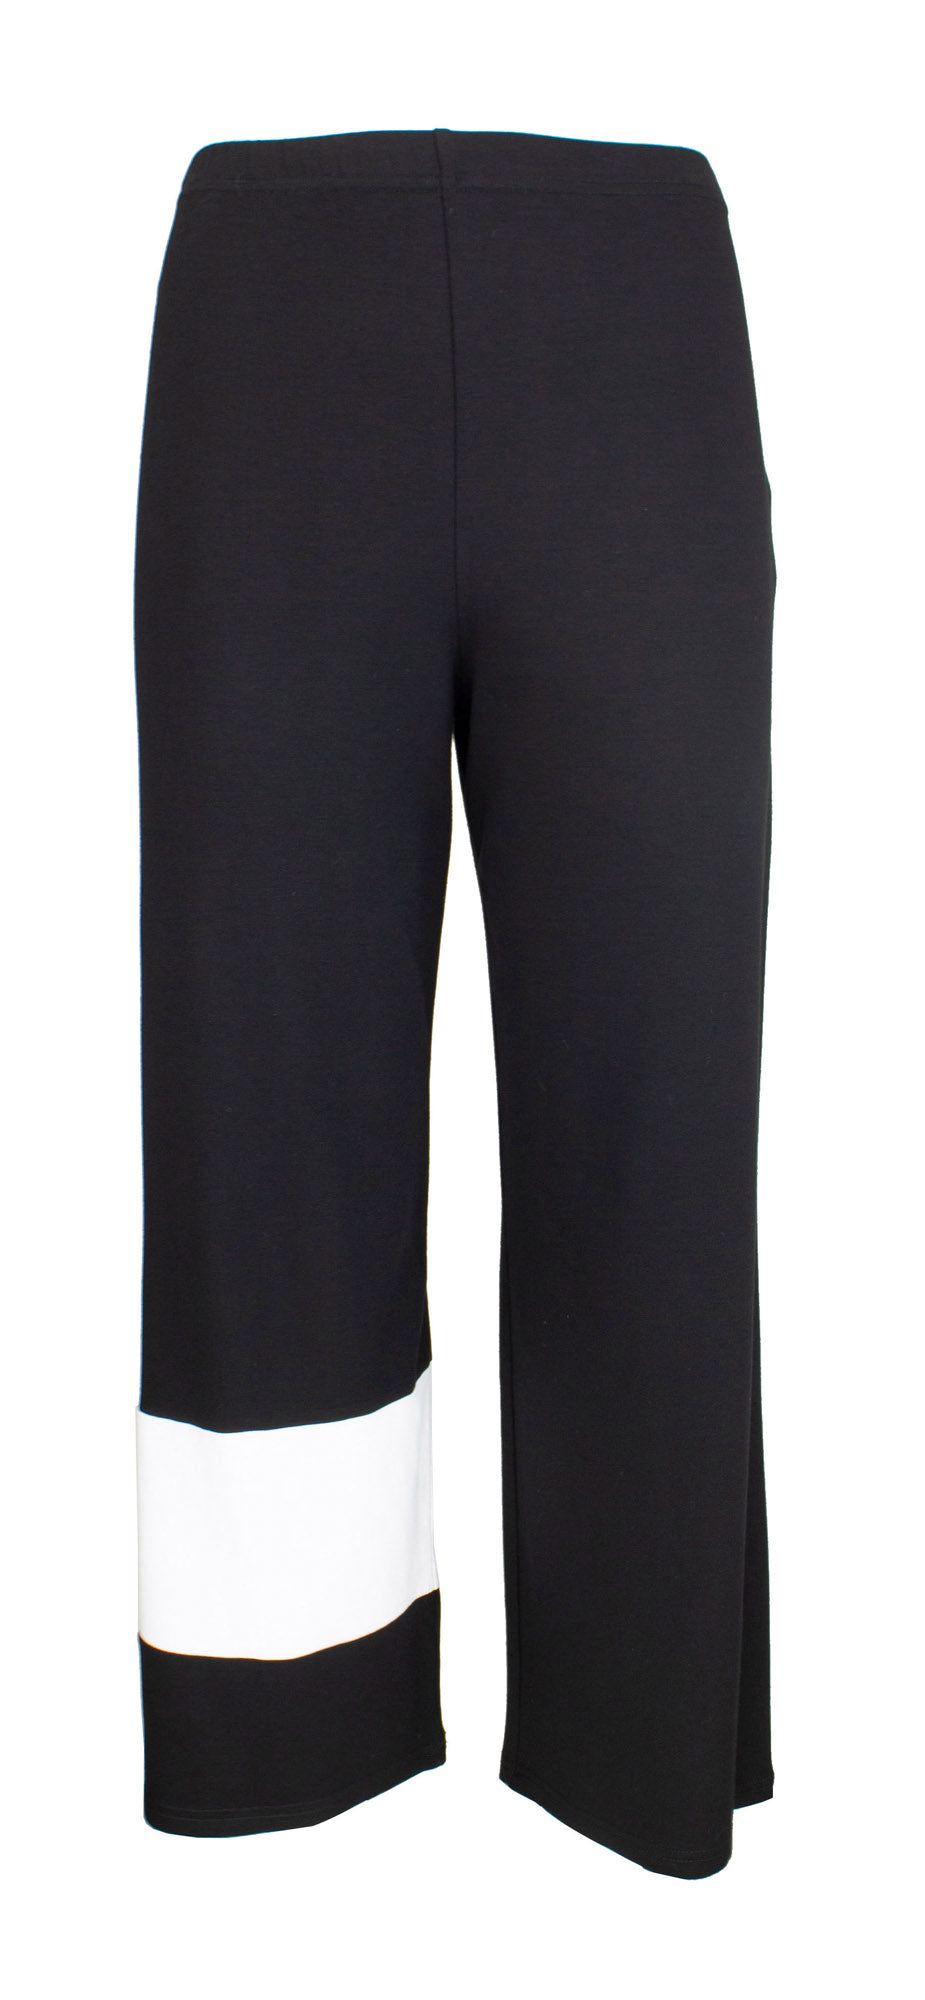 Pants black white stripe - B11490